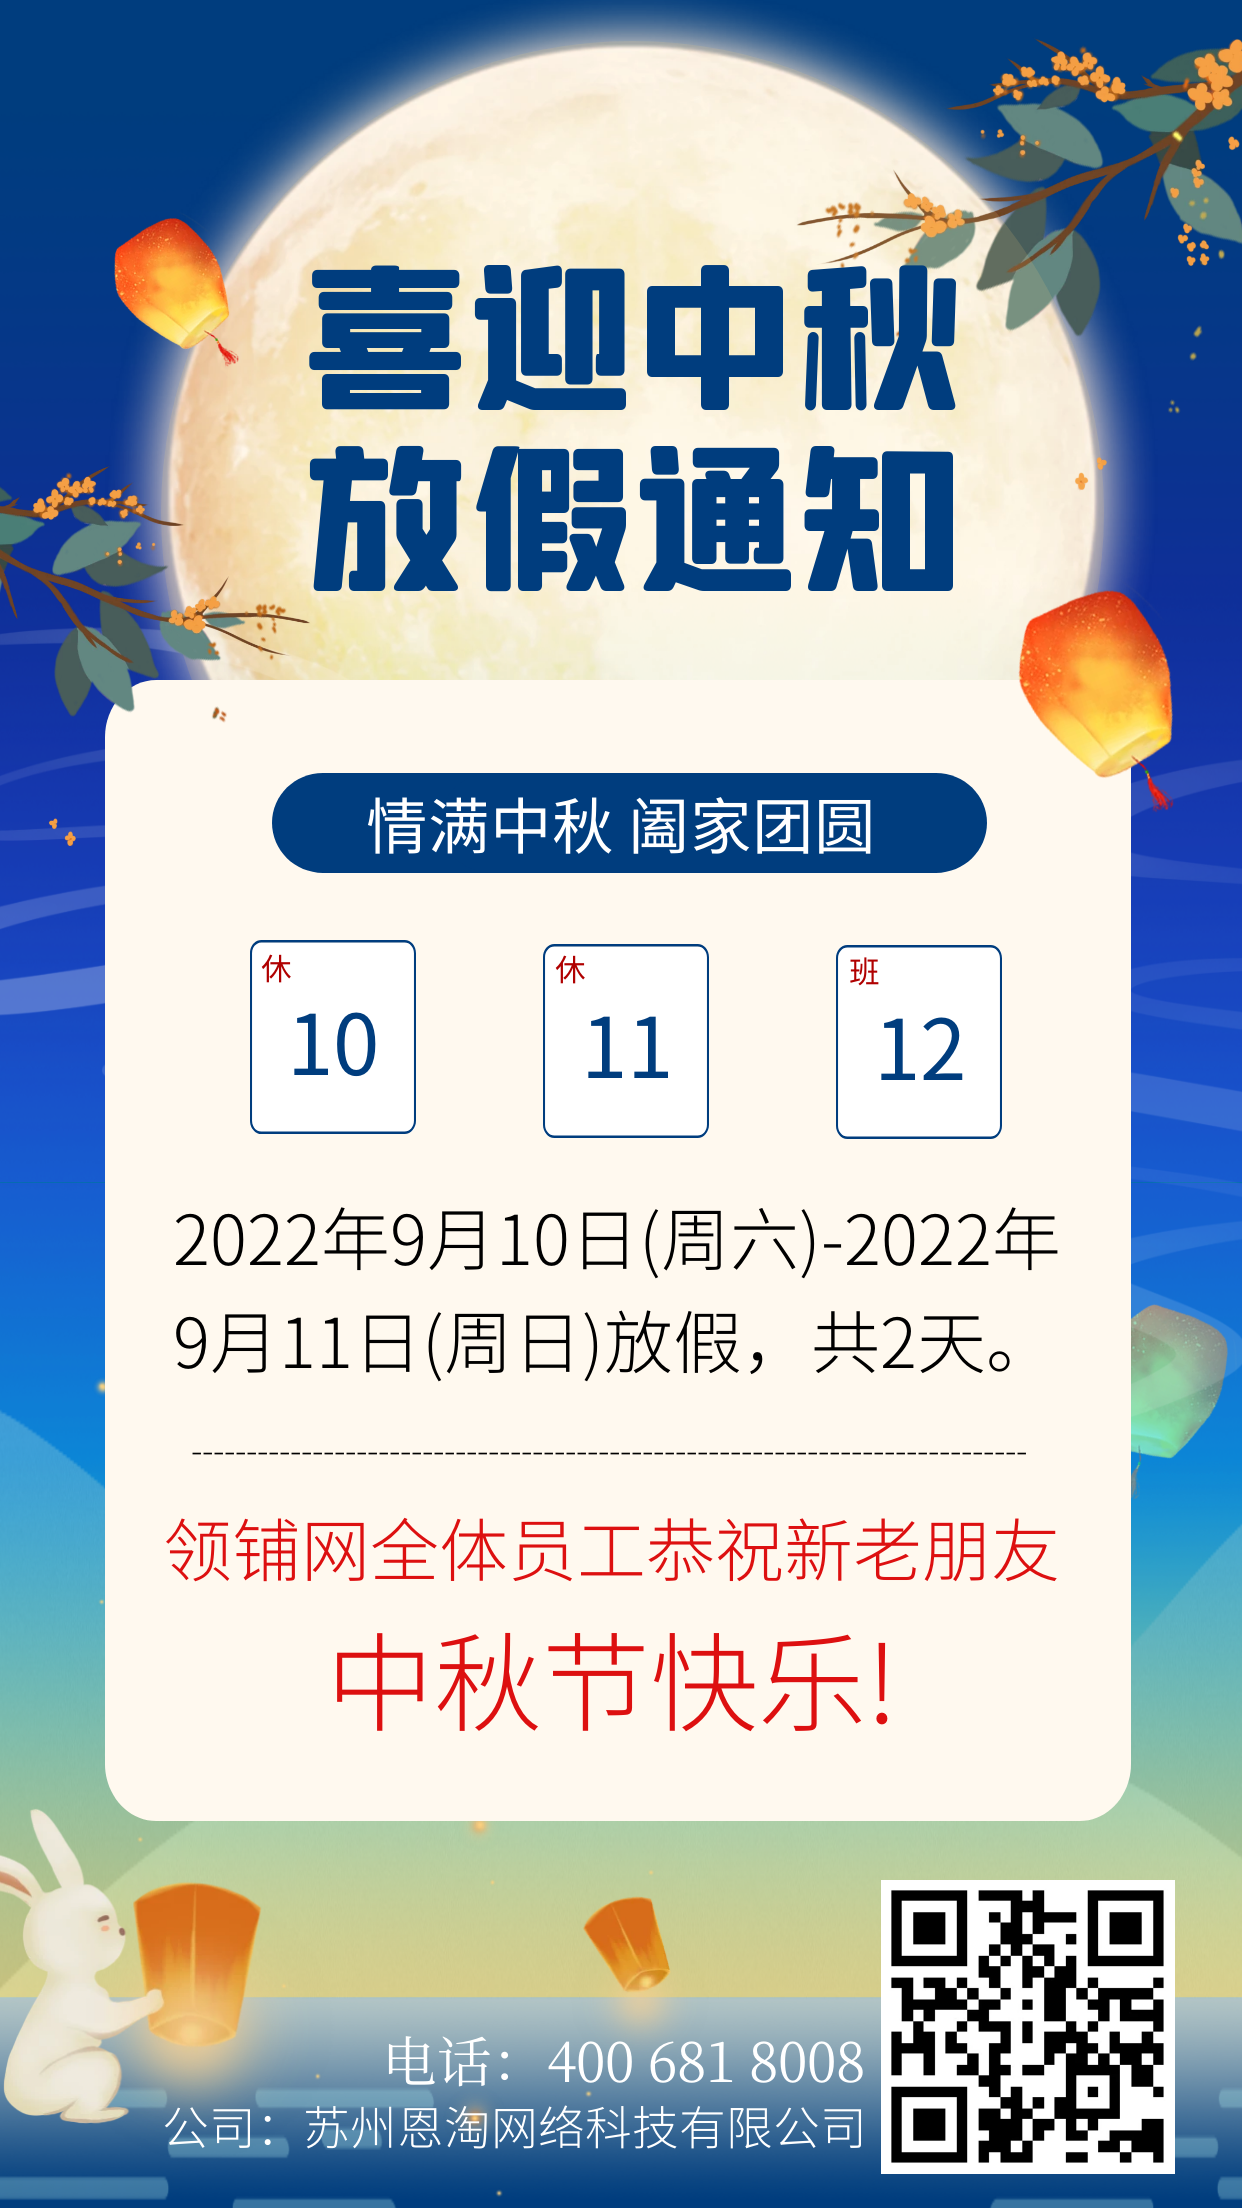 领铺网2022年中秋节放假通知